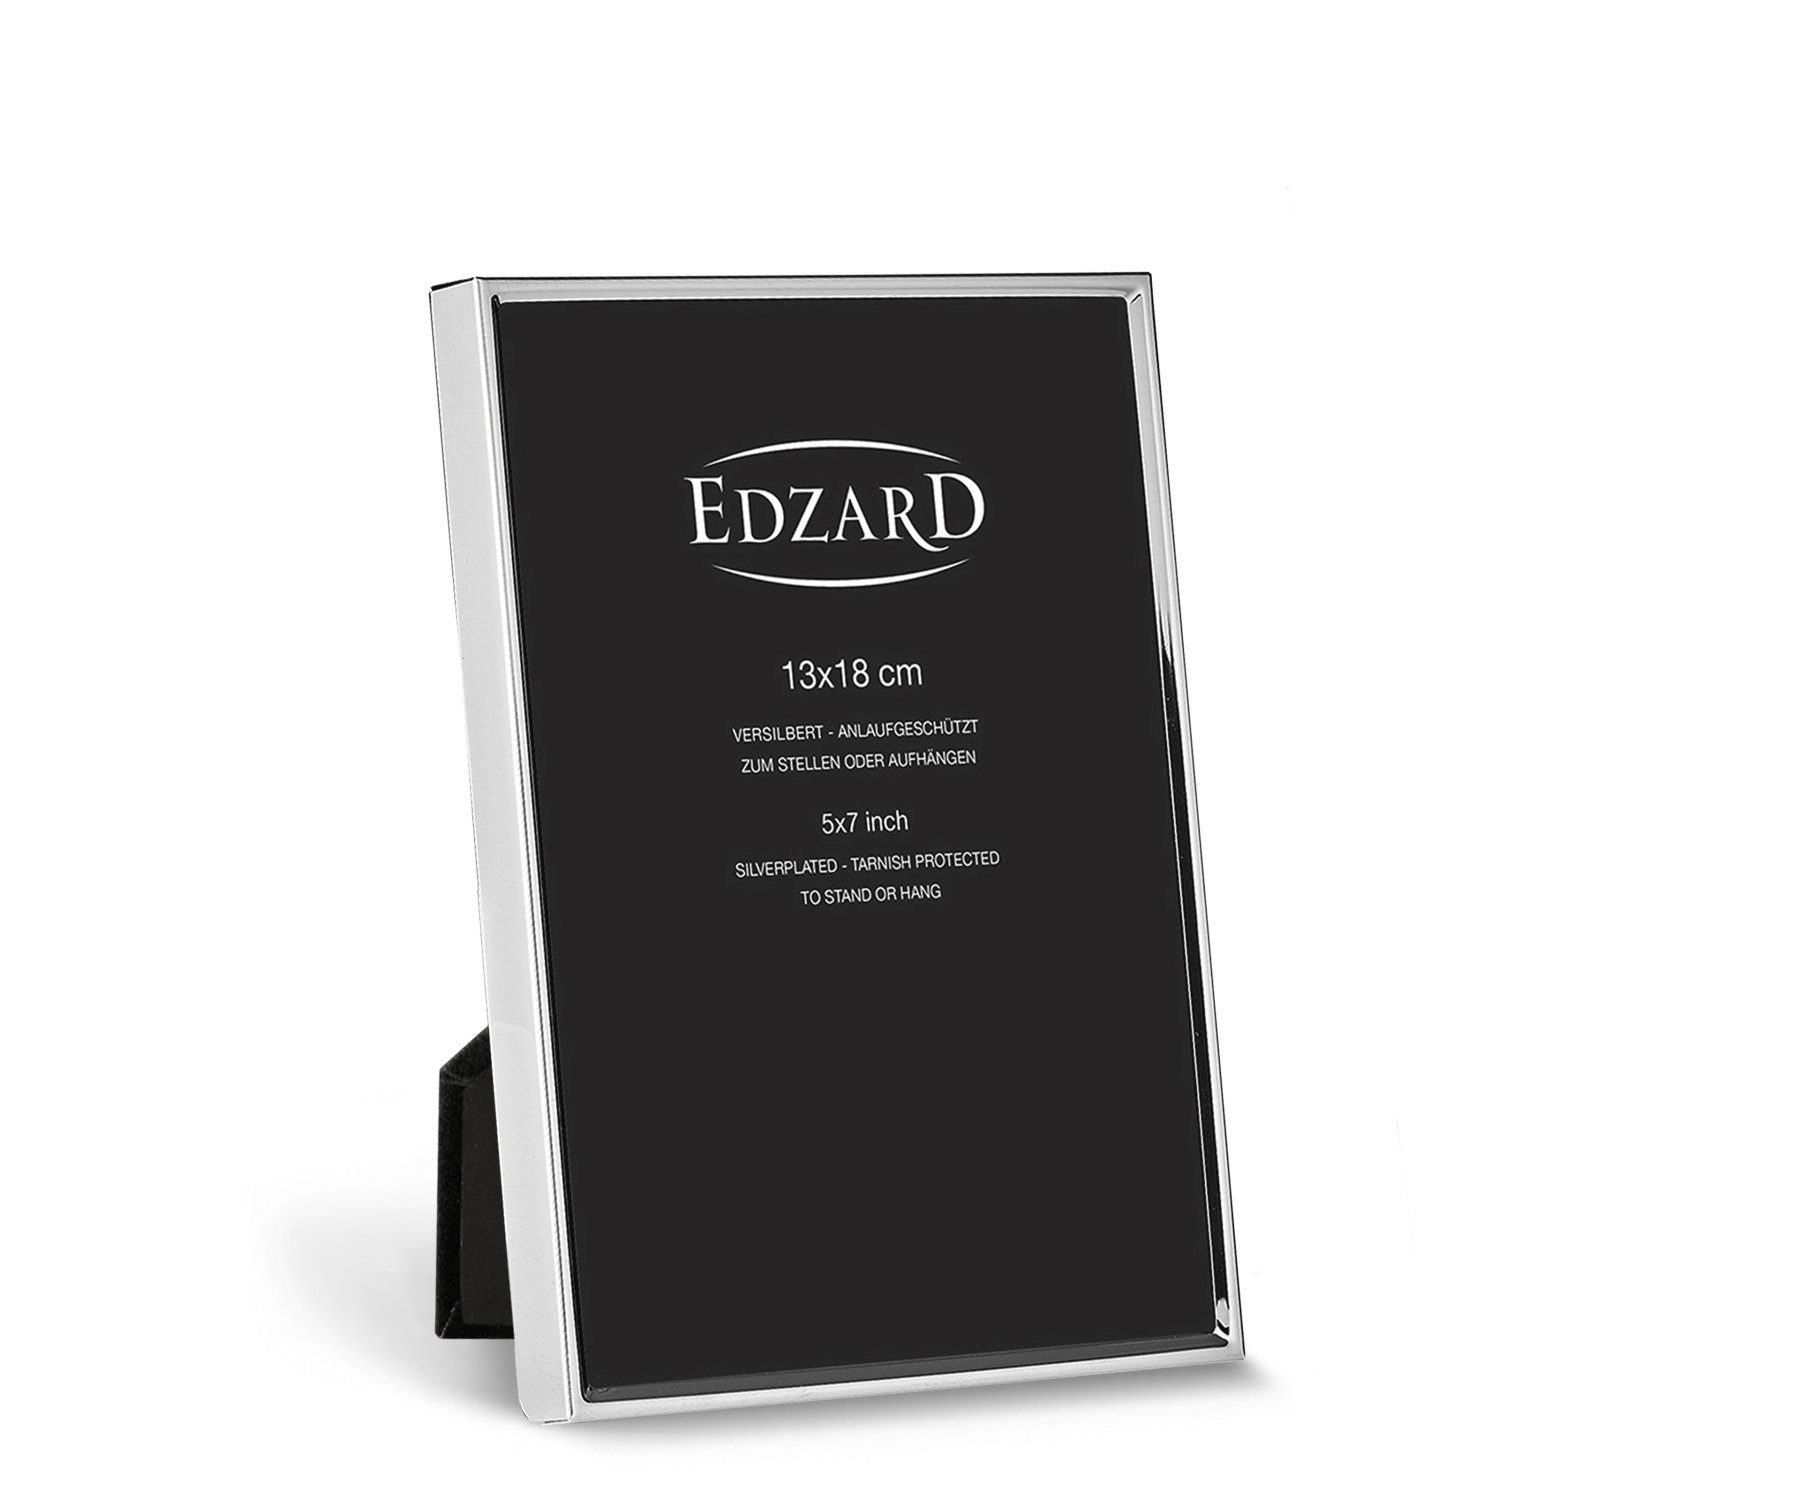 EDZARD Bilderrahmen , versilbert und anlaufgeschützt, für 13x18 cm Foto | Einzelrahmen